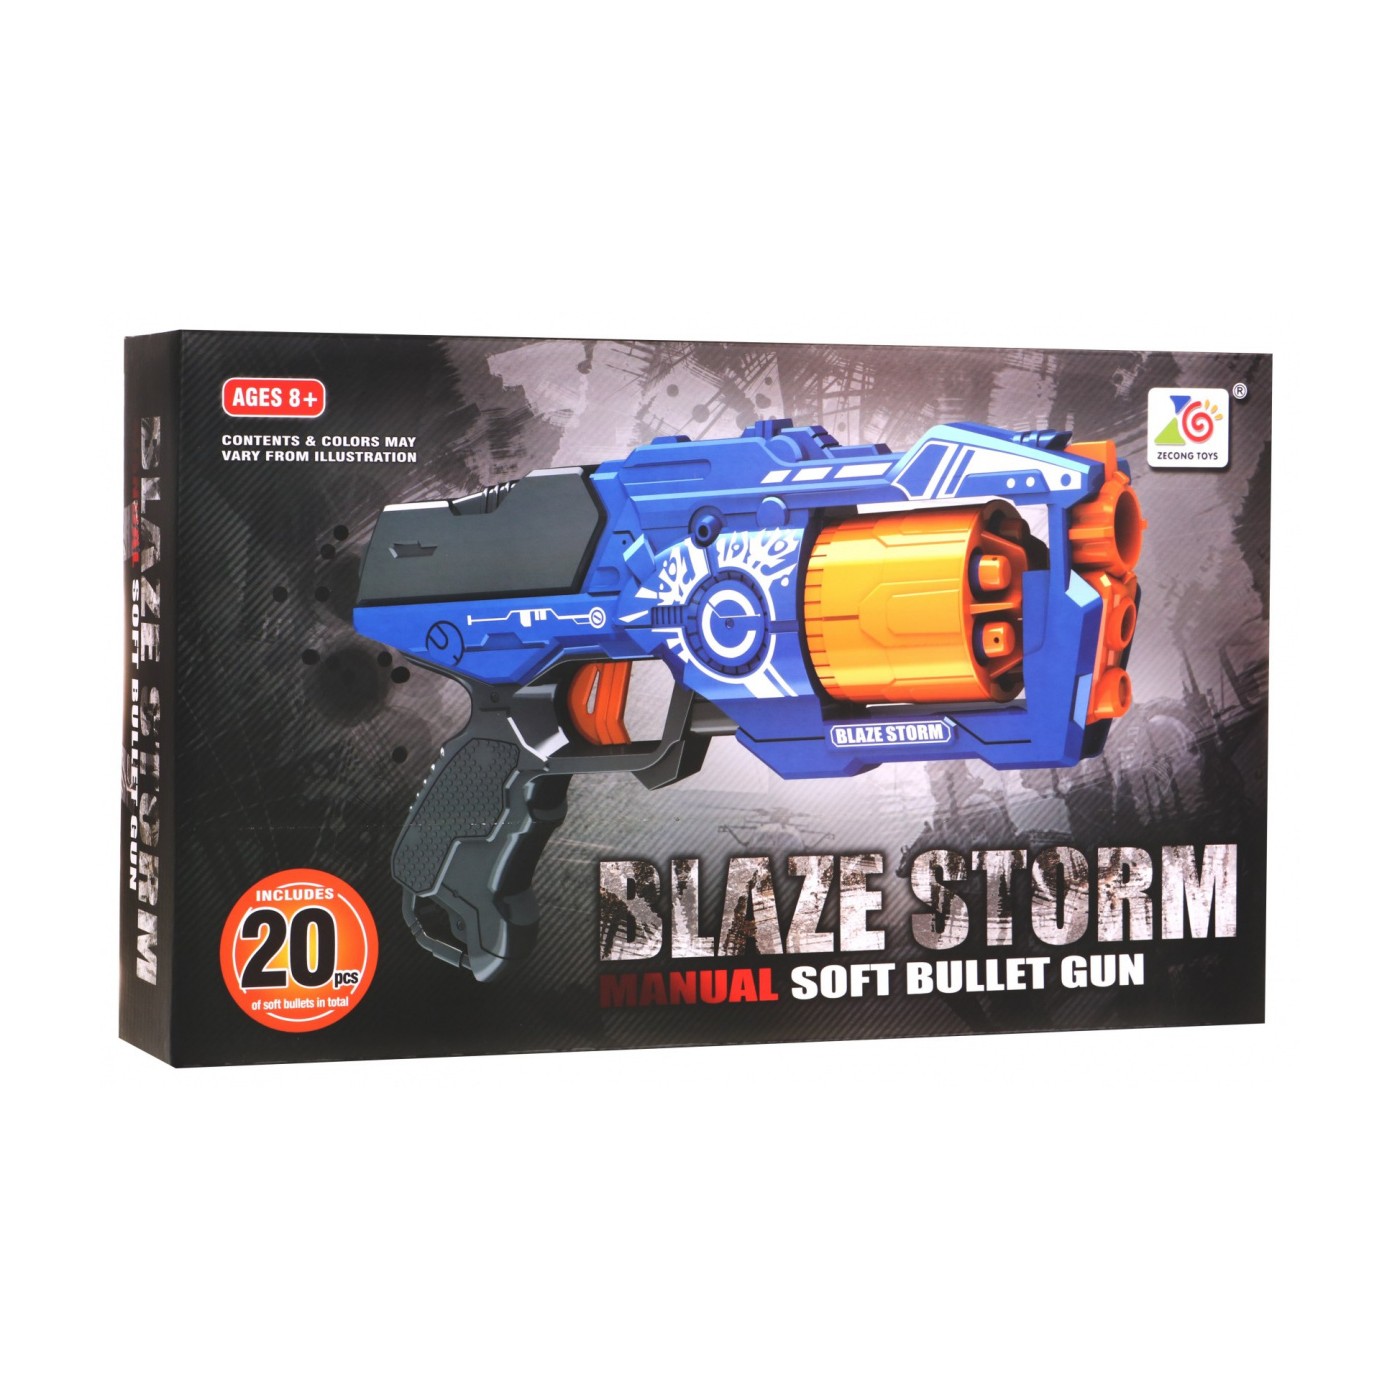 Blaze Storm Pistolet Niebieski 20 Naboi